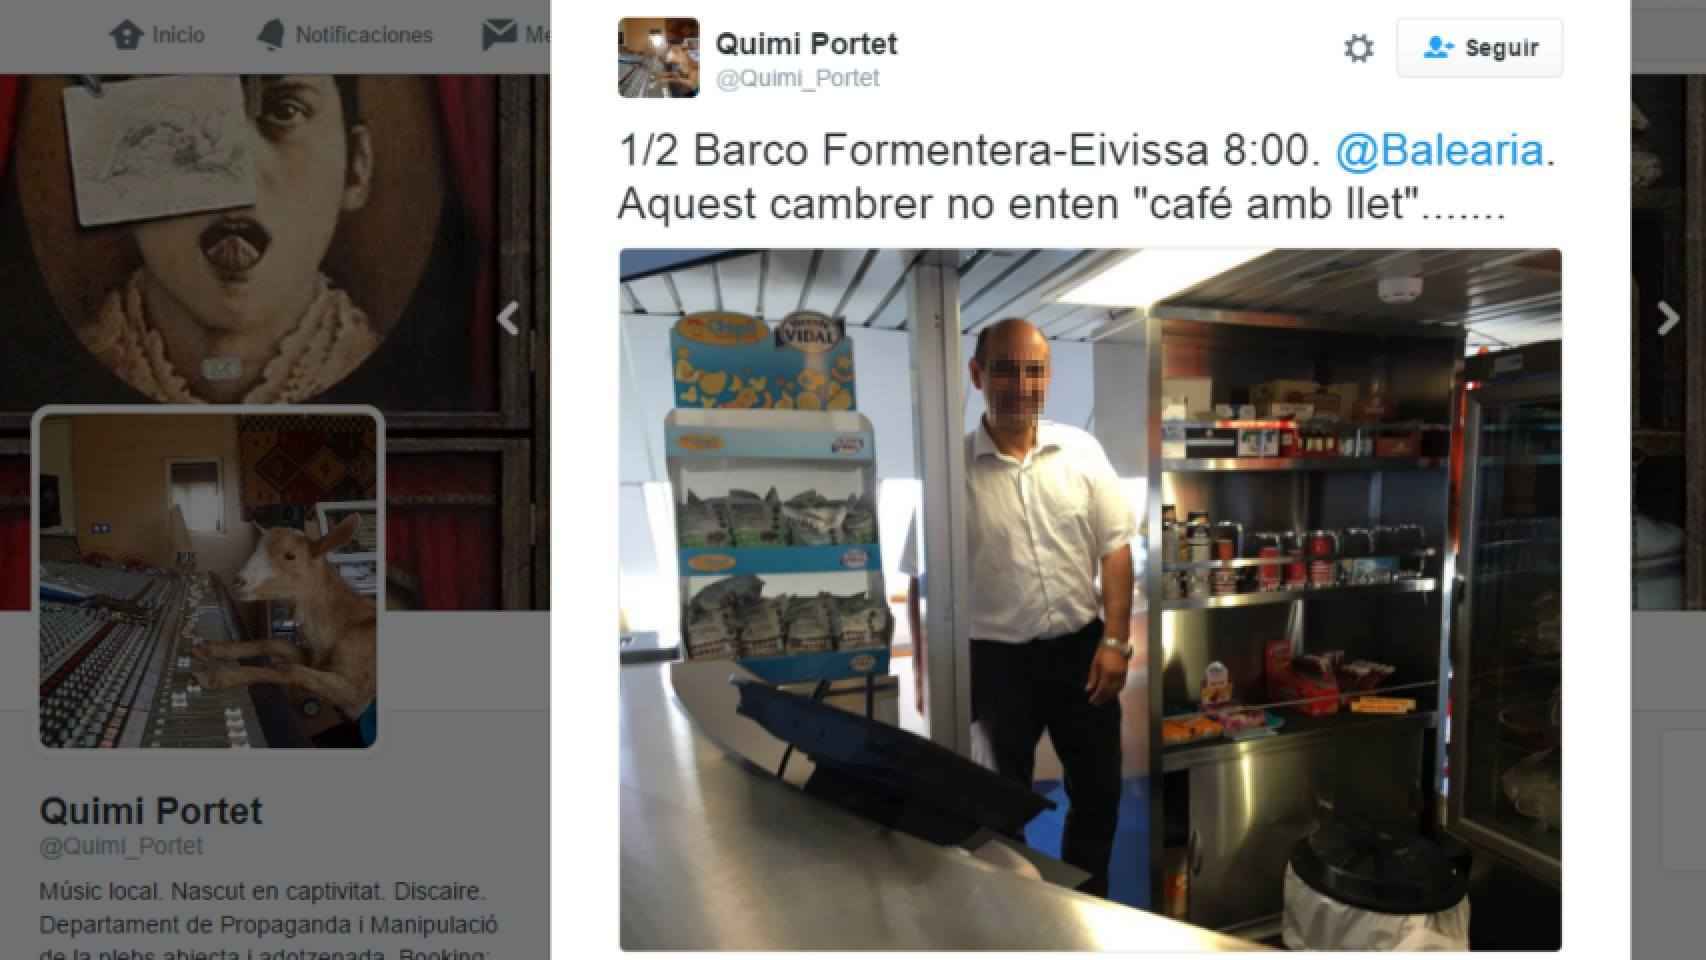 La versión del camarero de Balearia: No entendí a Quimi Portet. Le pedí disculpas y me habló en italiano